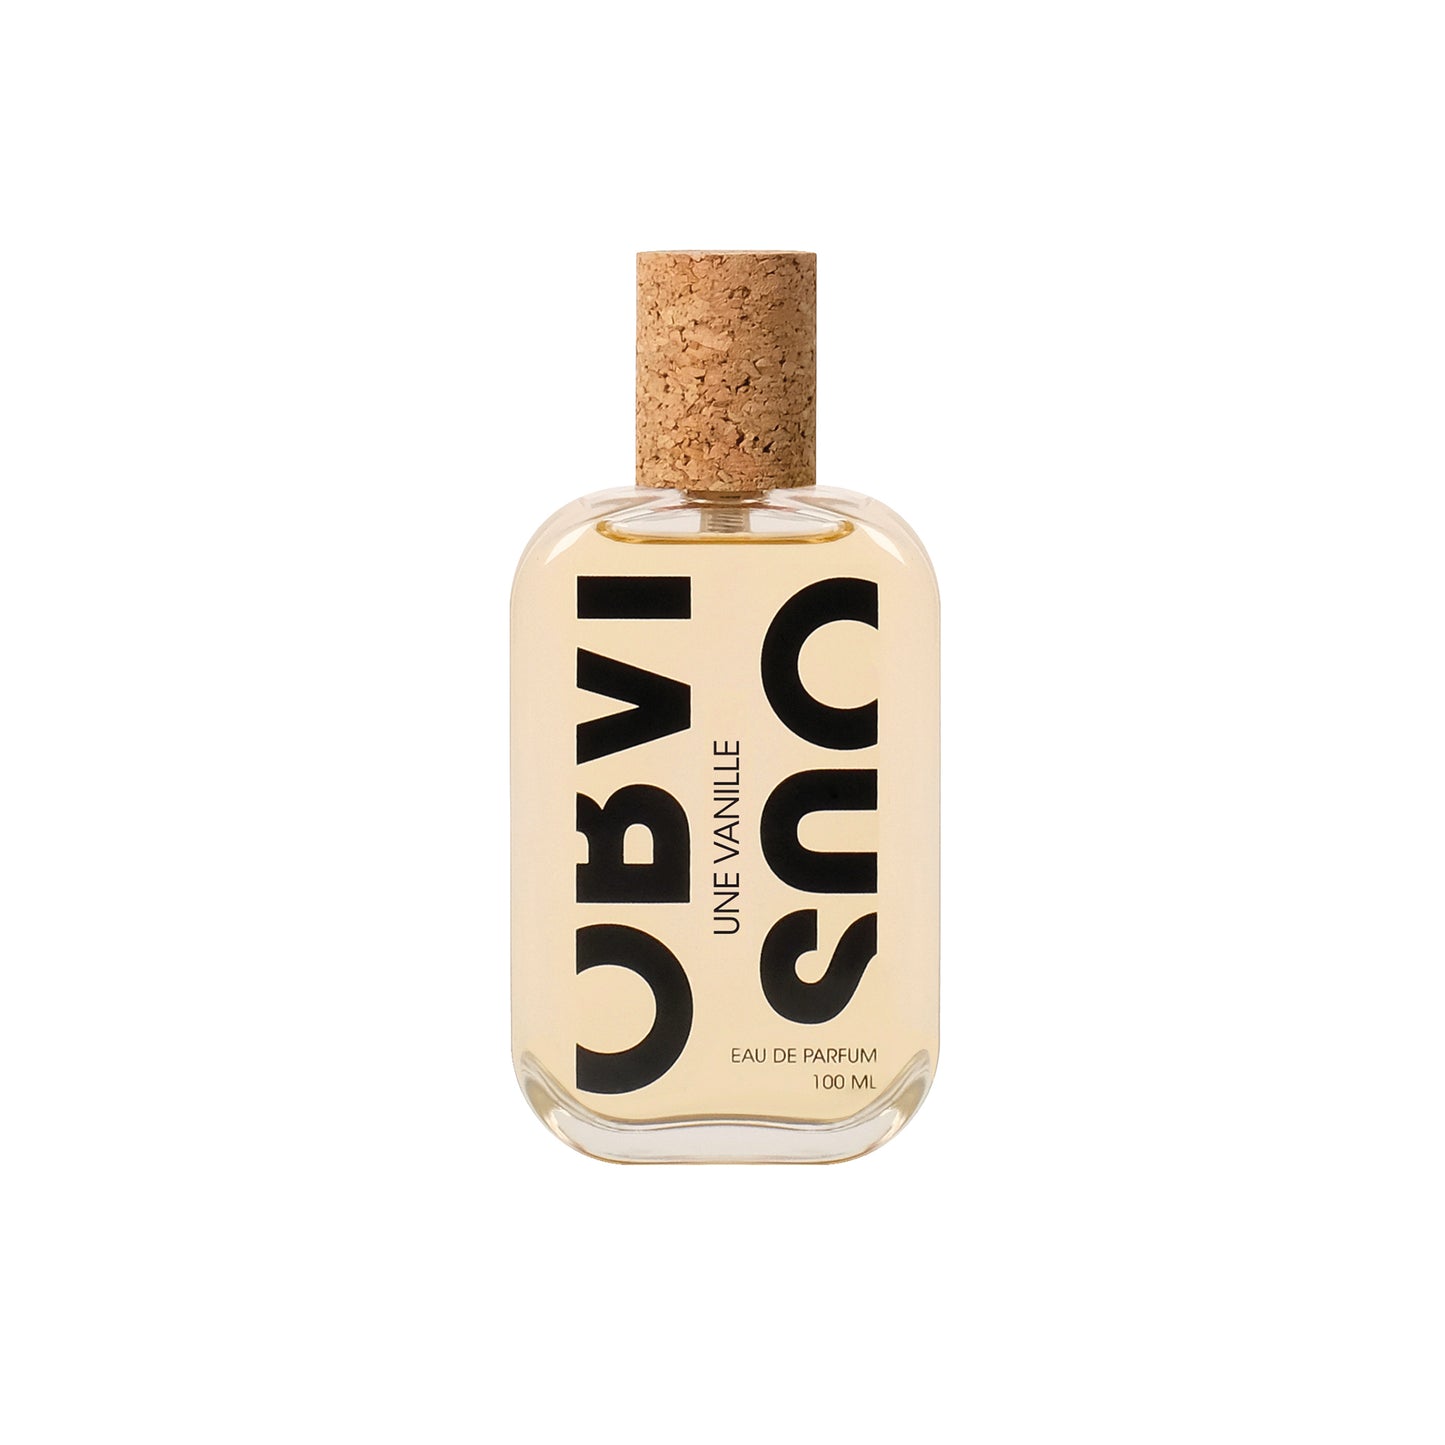 Une Vanille 1.5ml Sample Vial - Eau de Parfum